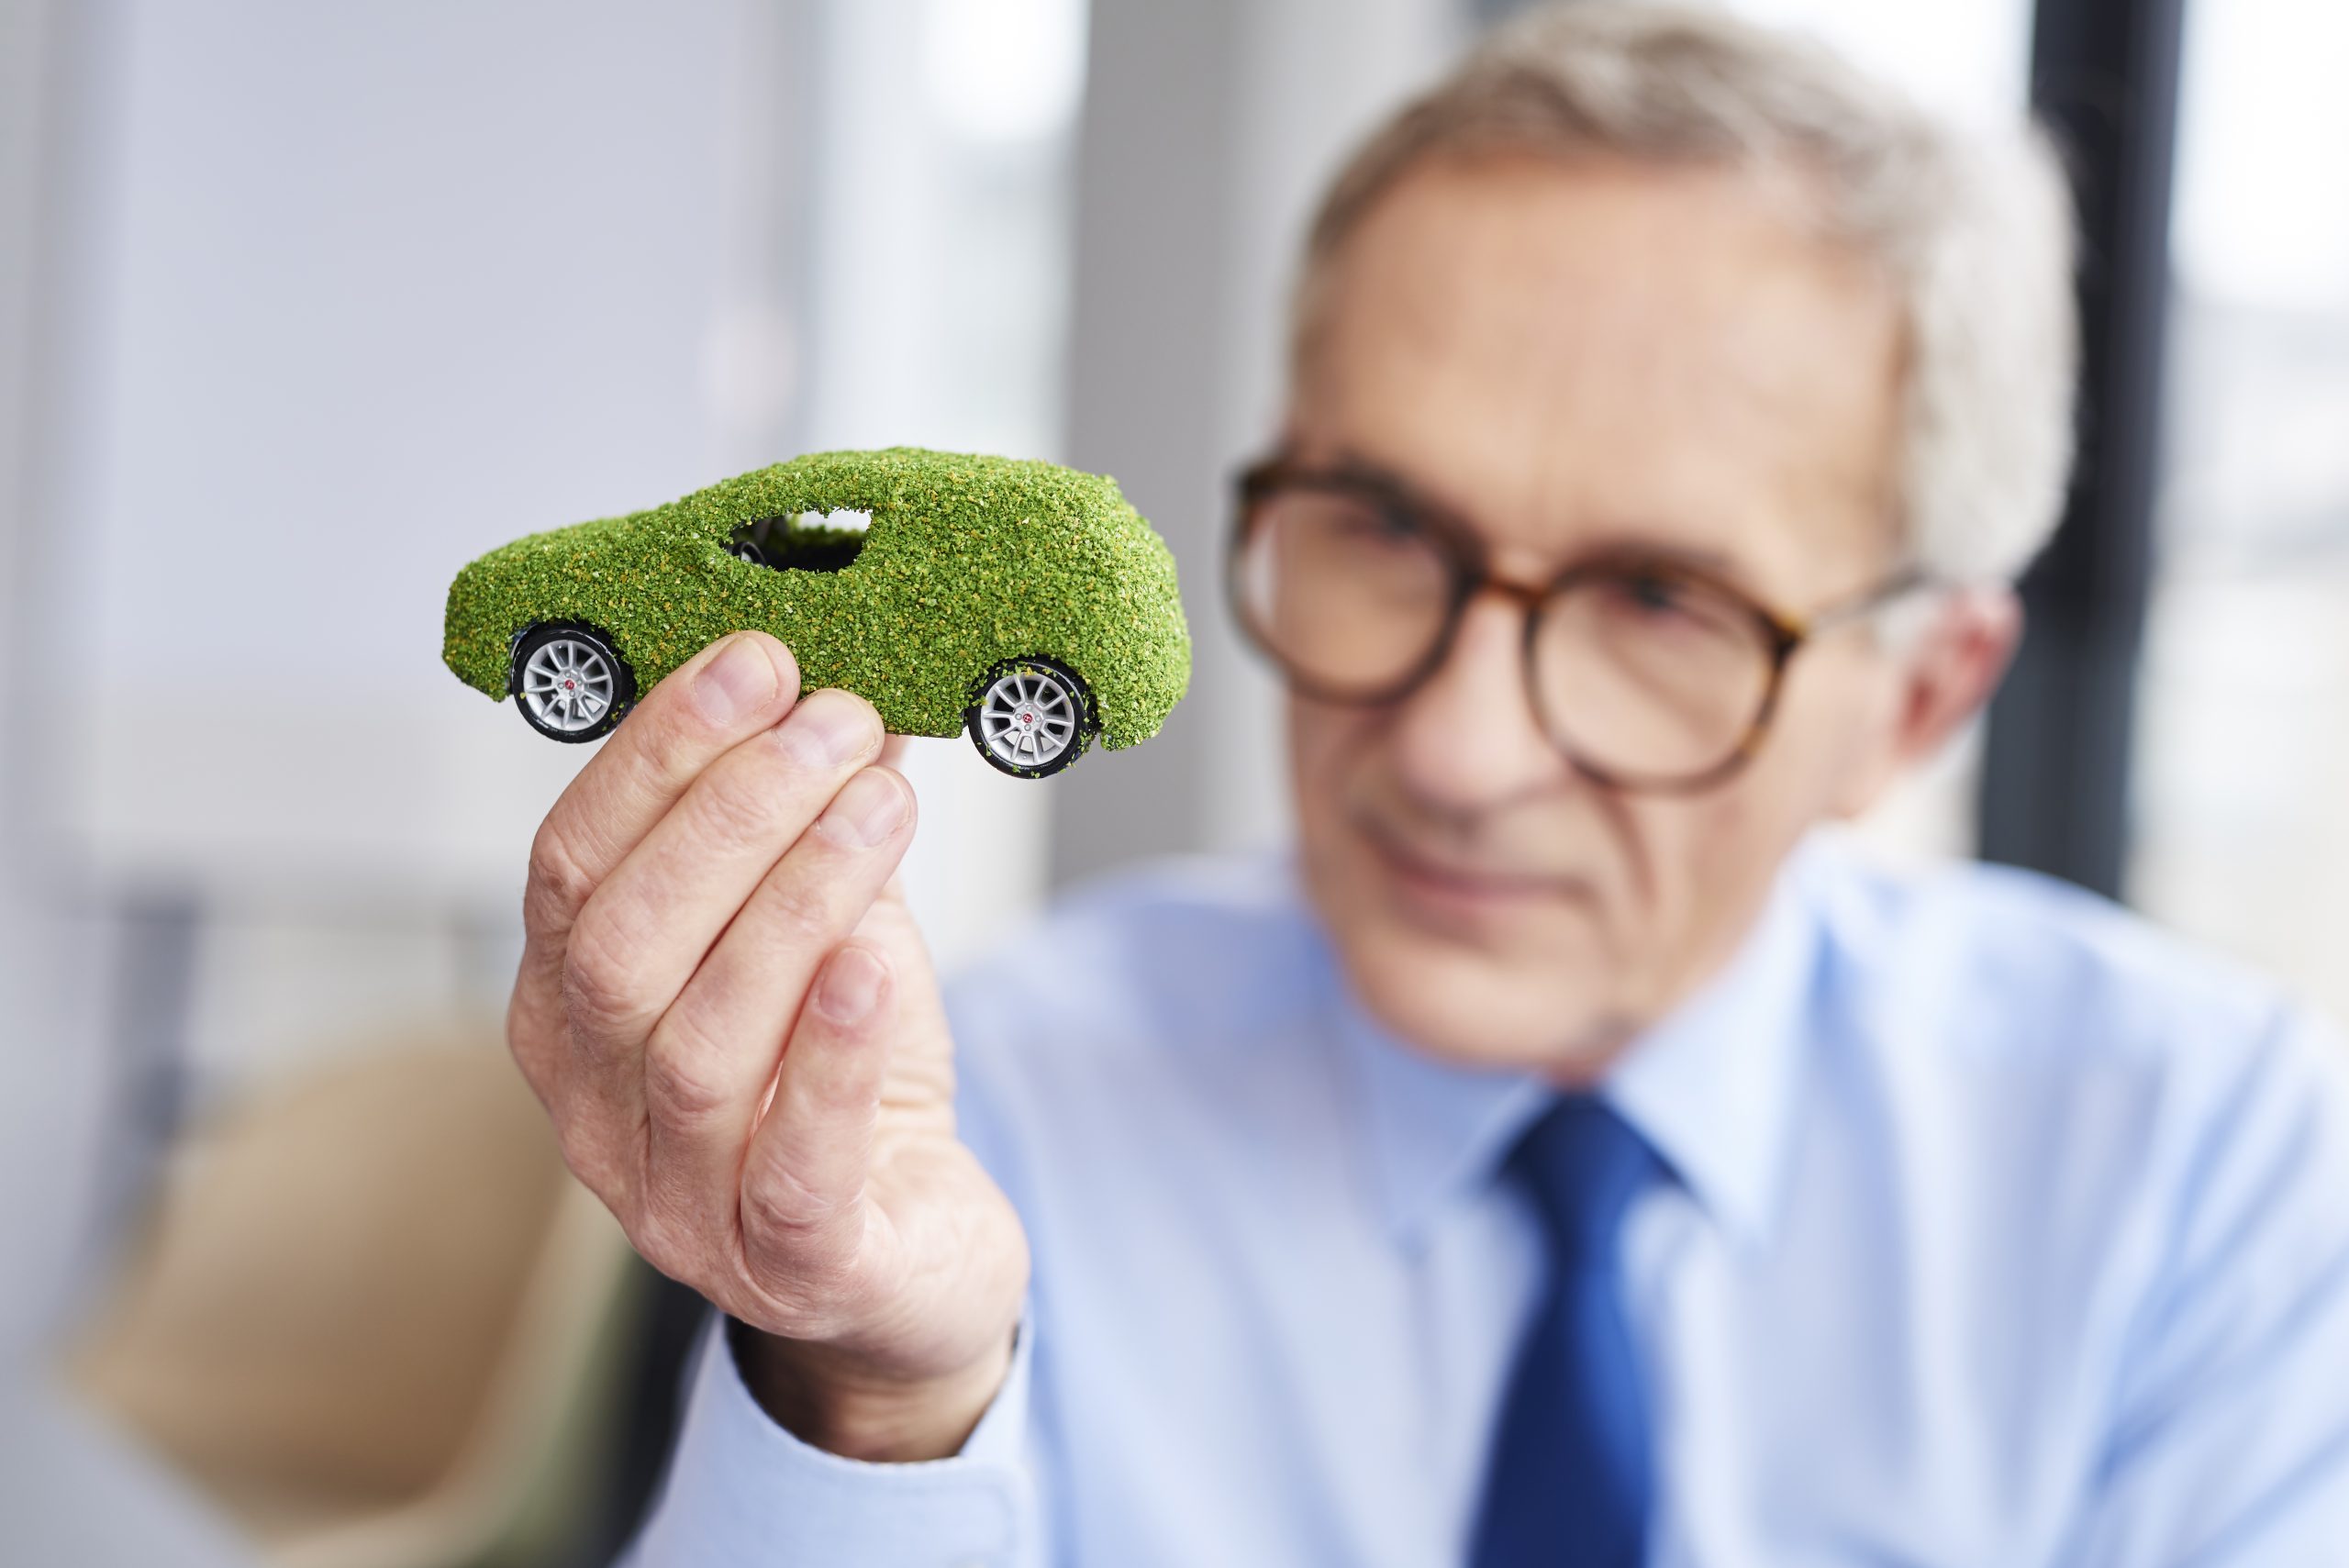 Älterer Mann mit Brille und Krawatte hält ein kleines Modellauto in der Hand, das mit grünem Gras überzogen ist